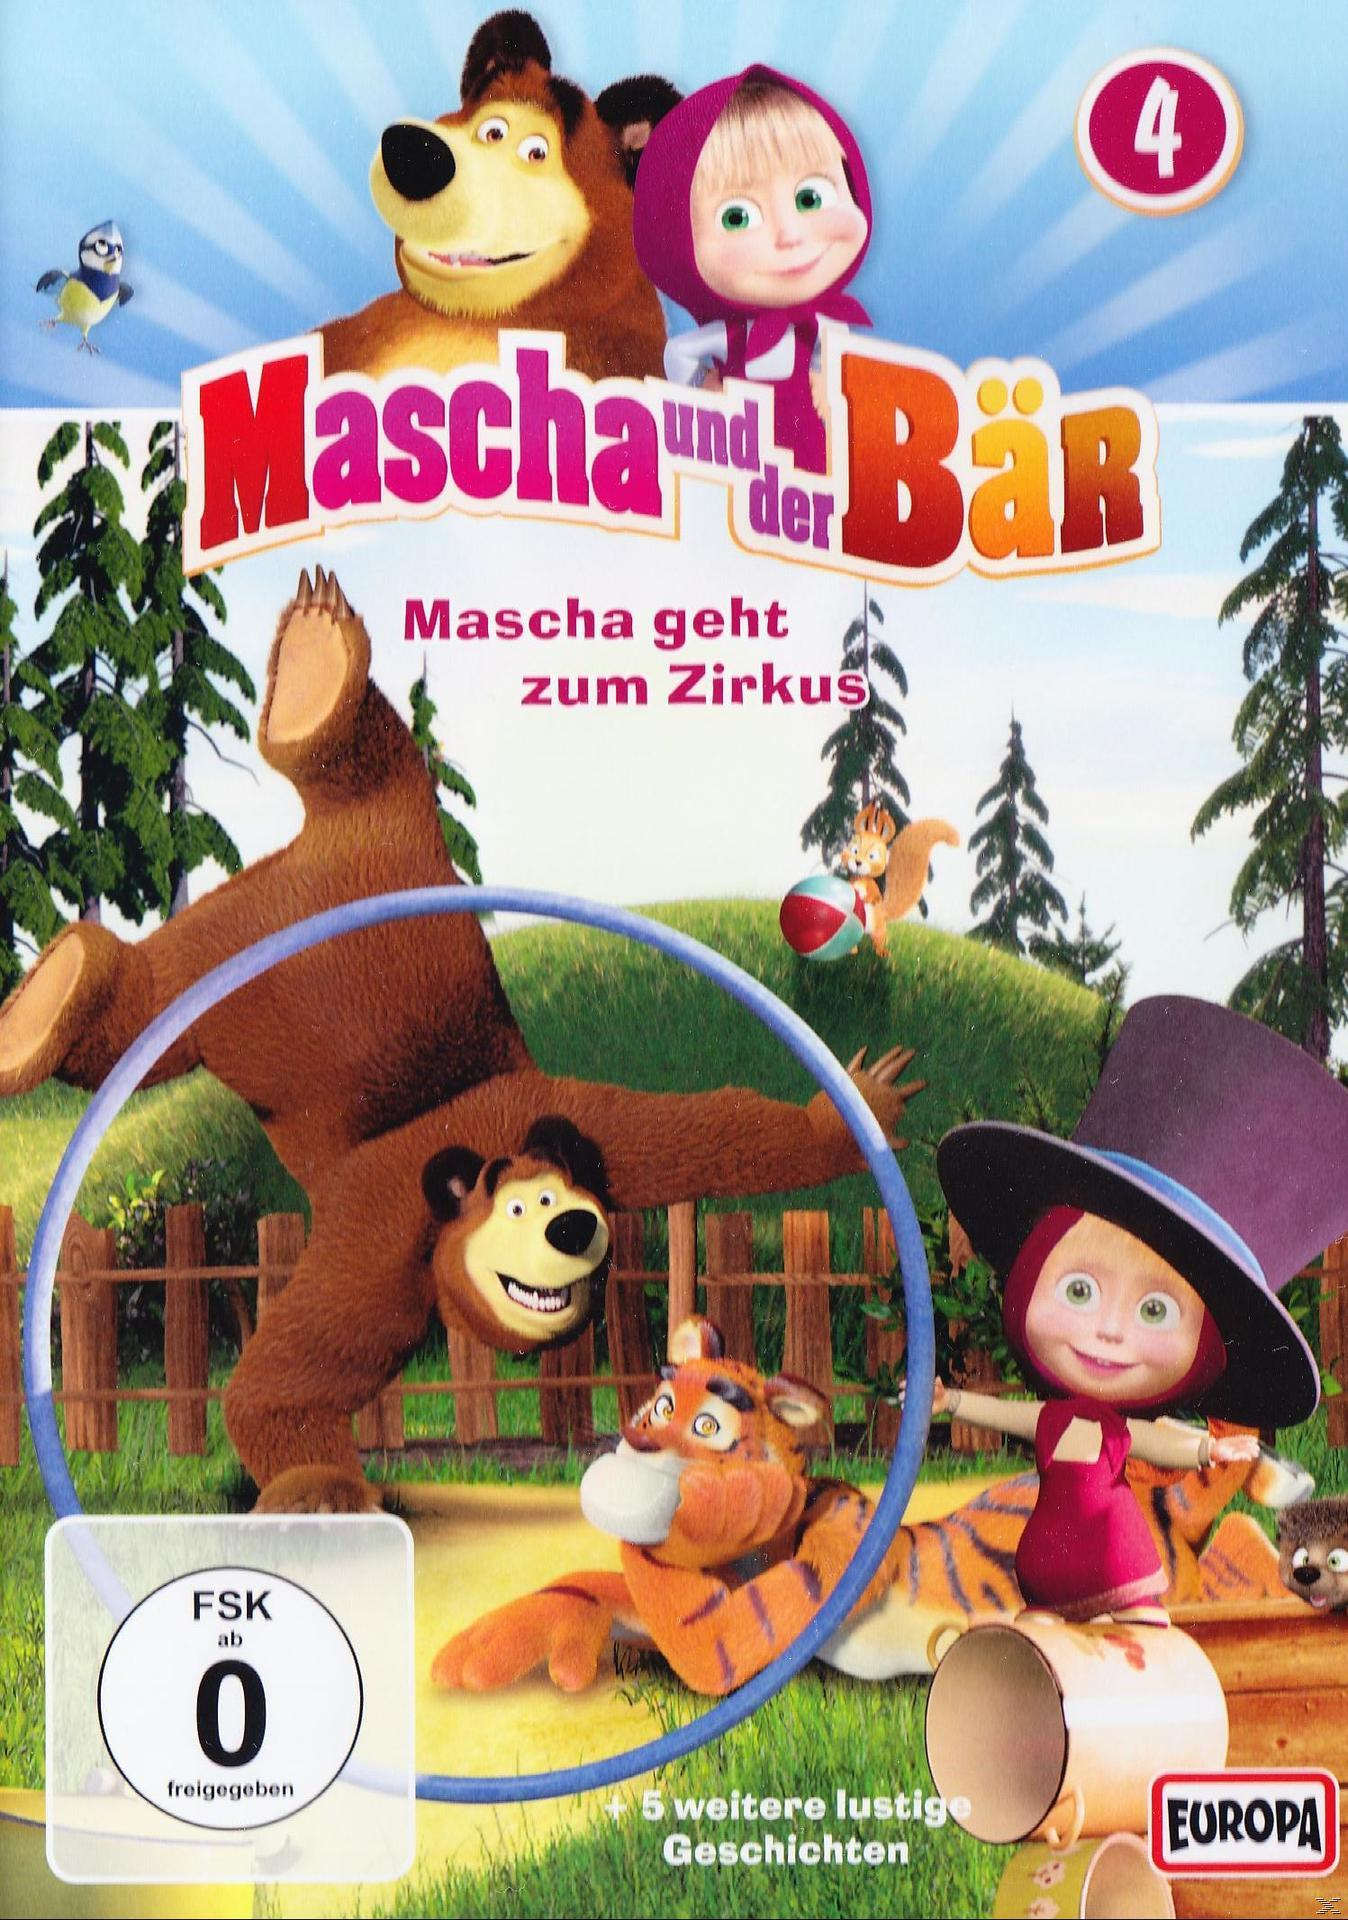 Mascha und der DVD 4 Bär, Vol